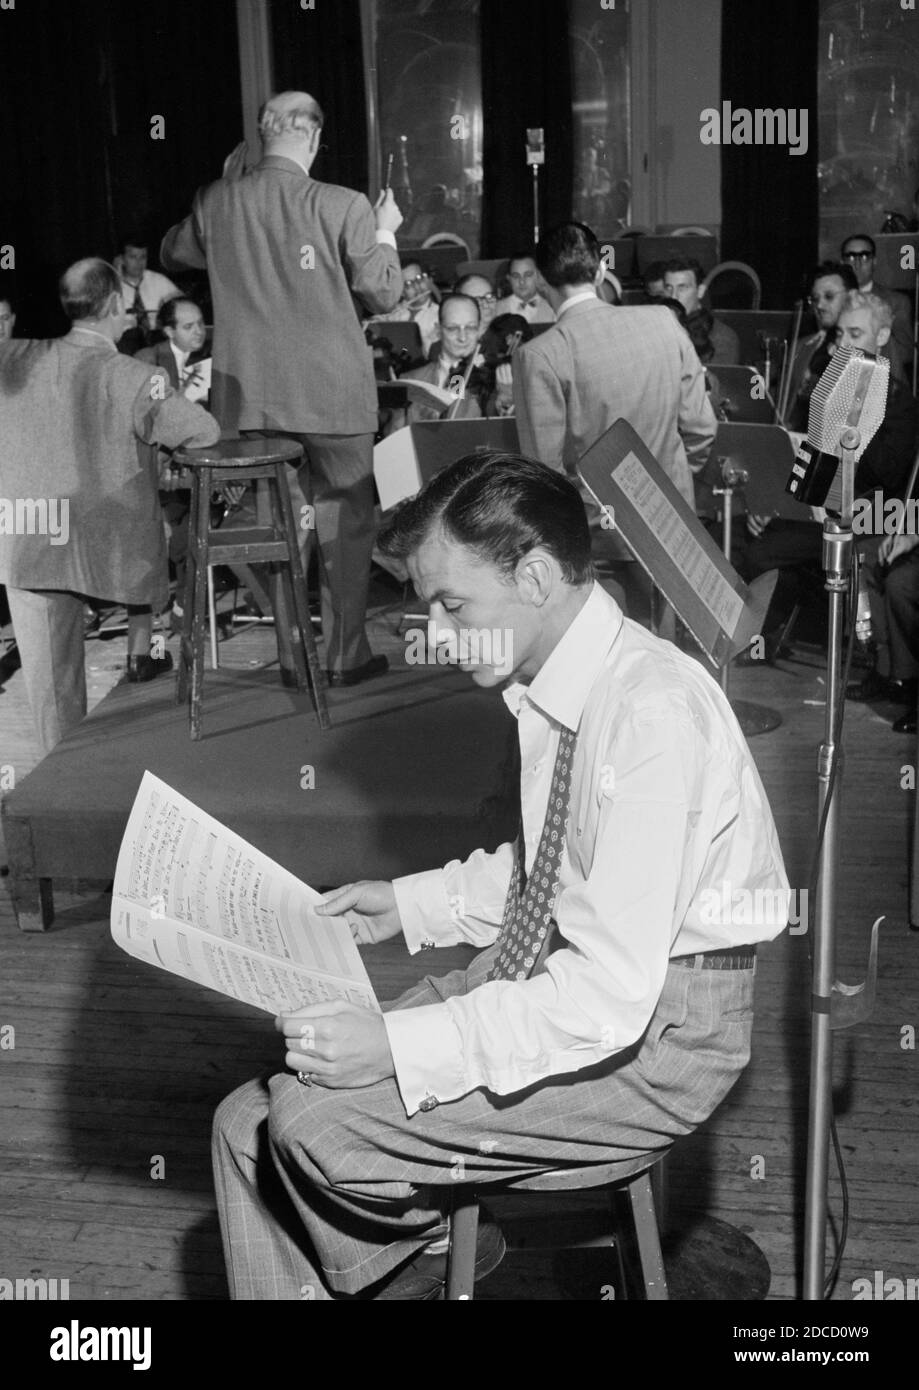 Frank Sinatra, amerikanischer Sänger und Schauspieler Stockfoto